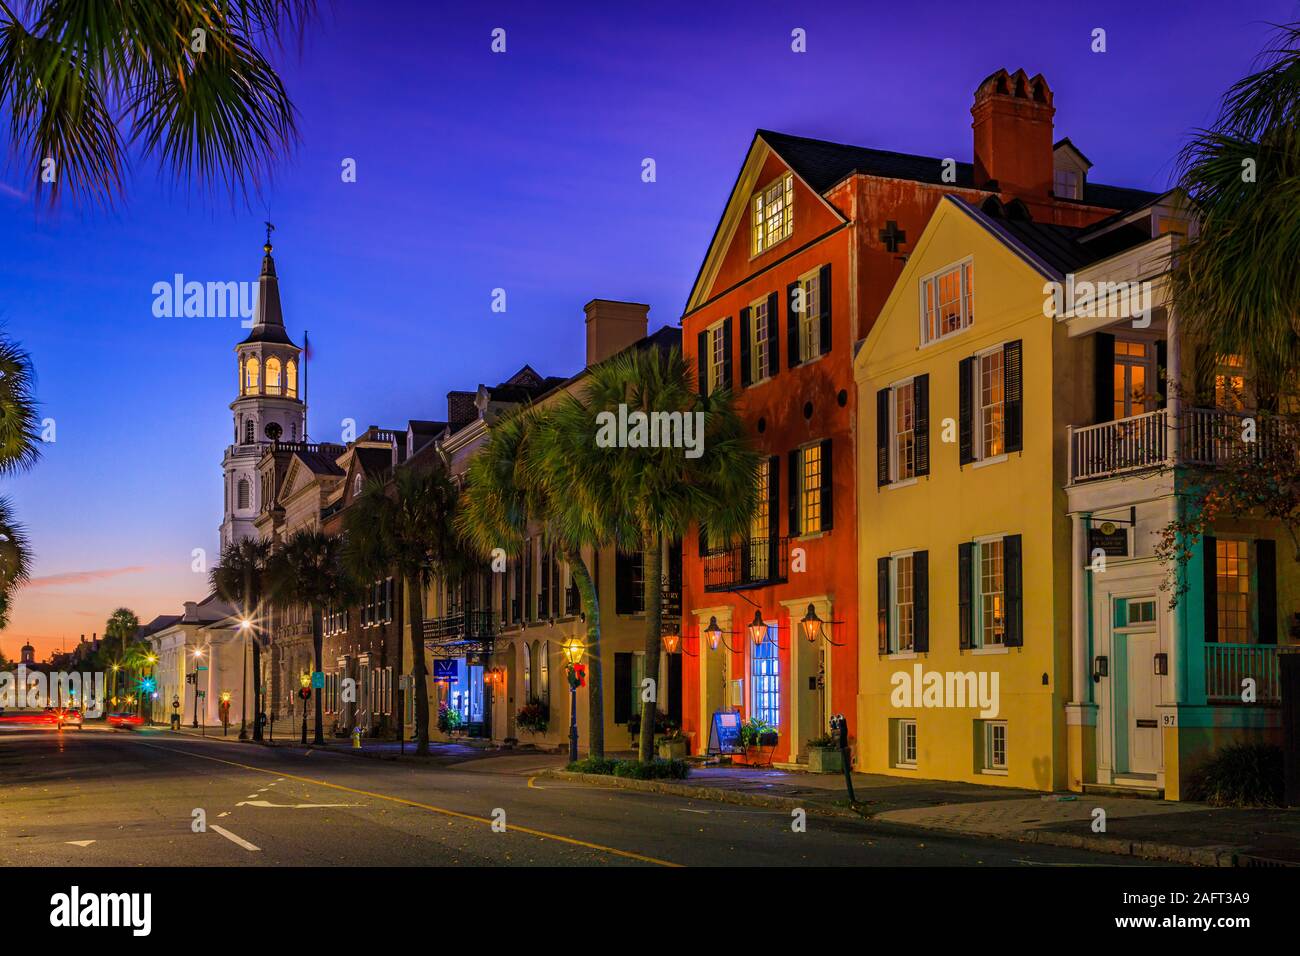 Charleston est la plus ancienne et la plus grande ville de l'Etat américain de Caroline du Sud, connue pour son rôle important dans le commerce des esclaves américains. La ville est le c Banque D'Images